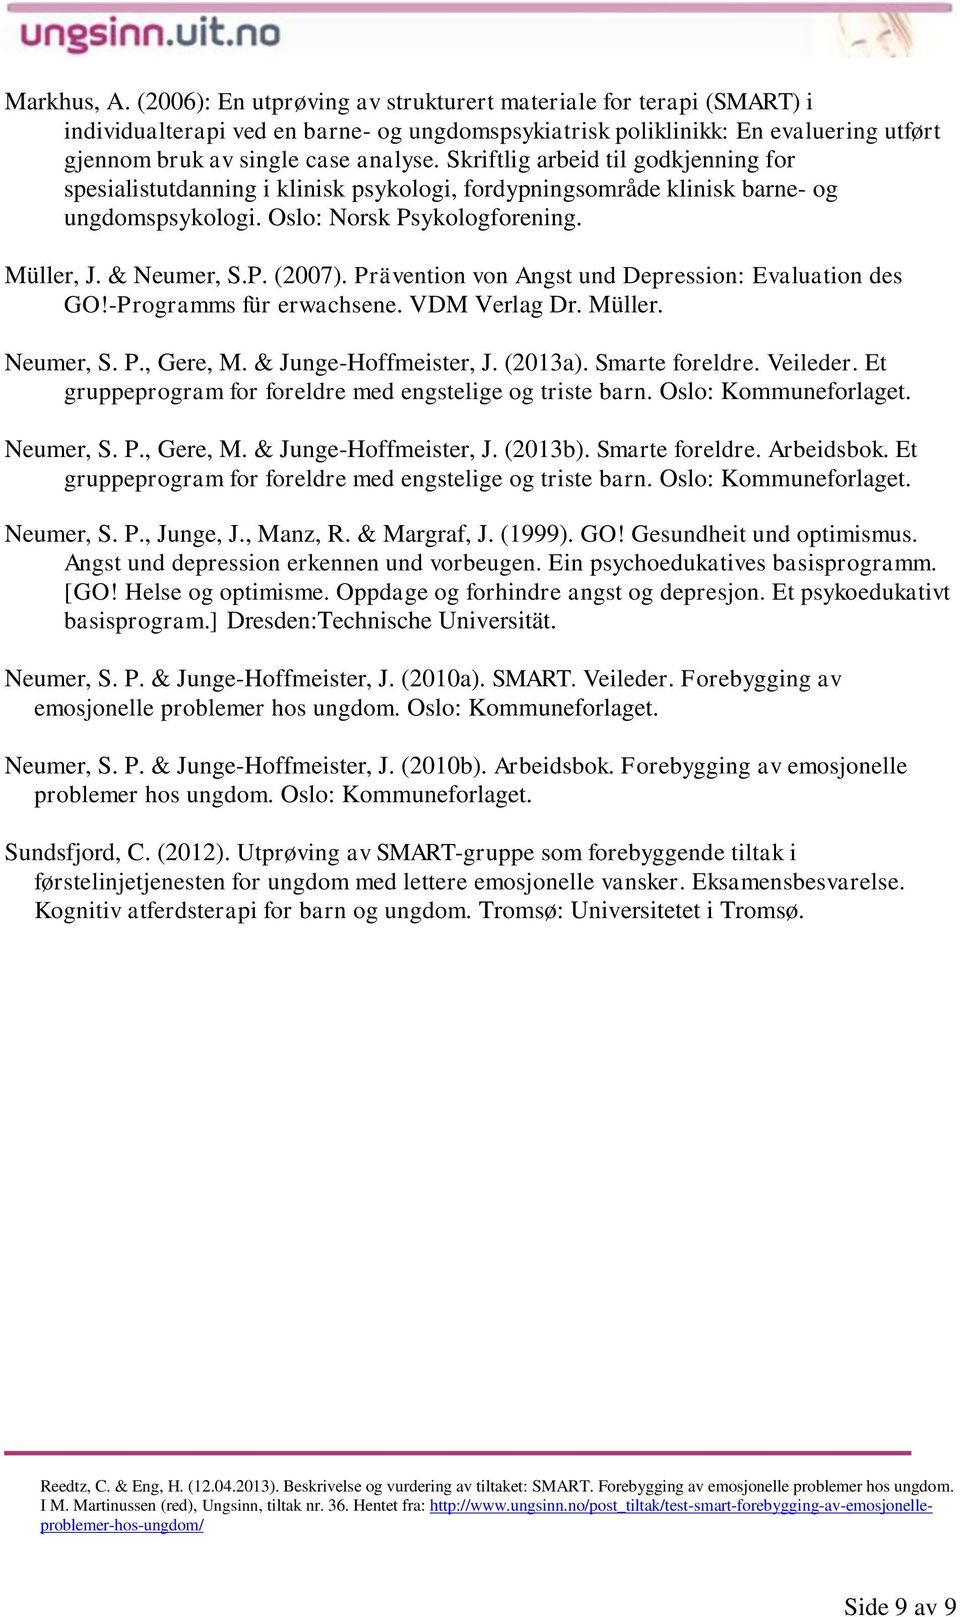 Skriftlig arbeid til godkjenning for spesialistutdanning i klinisk psykologi, fordypningsområde klinisk barne- og ungdomspsykologi. Oslo: Norsk Psykologforening. Müller, J. & Neumer, S.P. (2007).